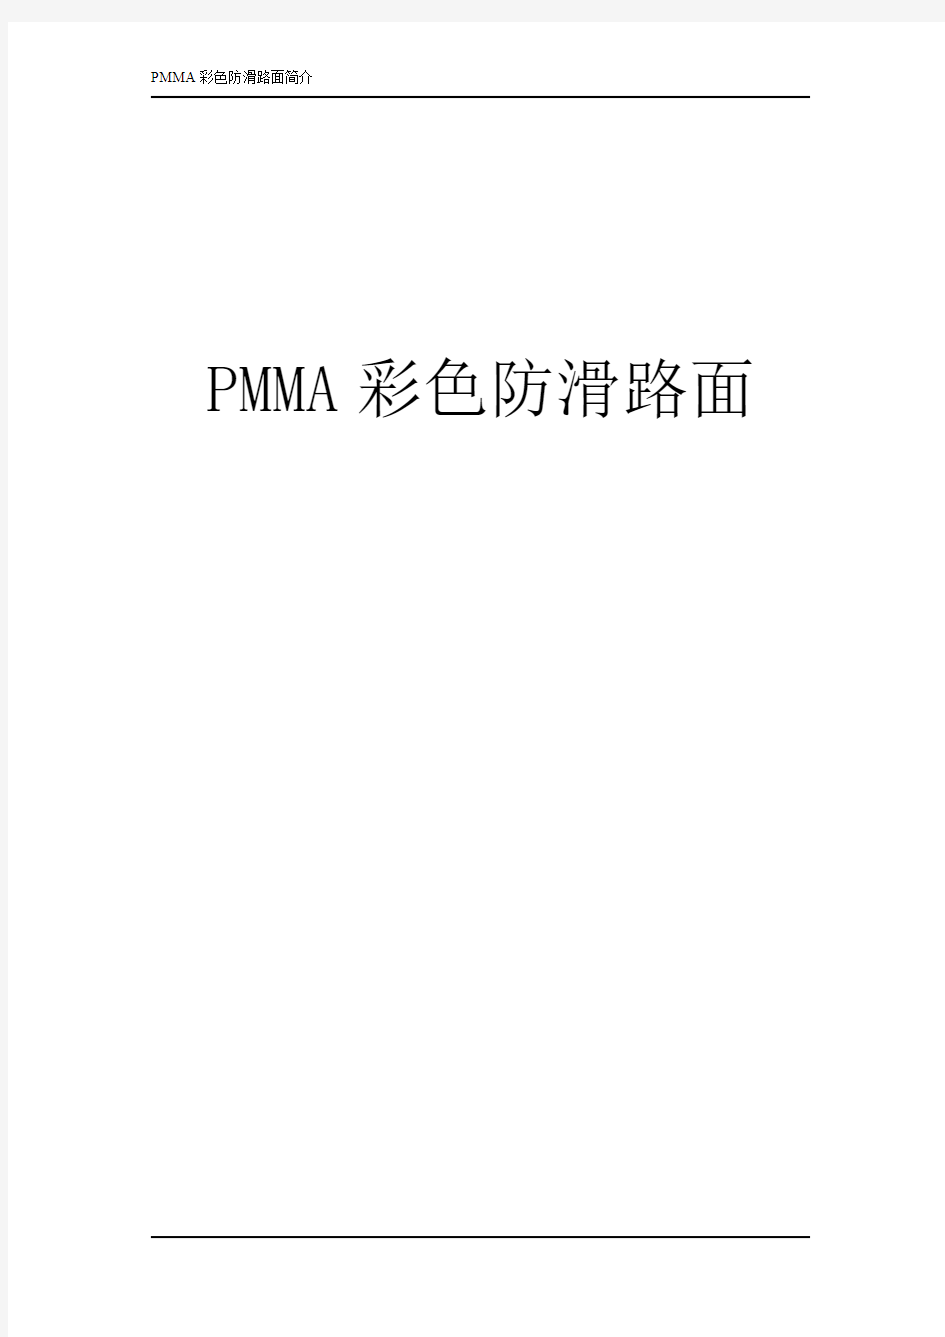 PMMA彩色防滑路面方案2013